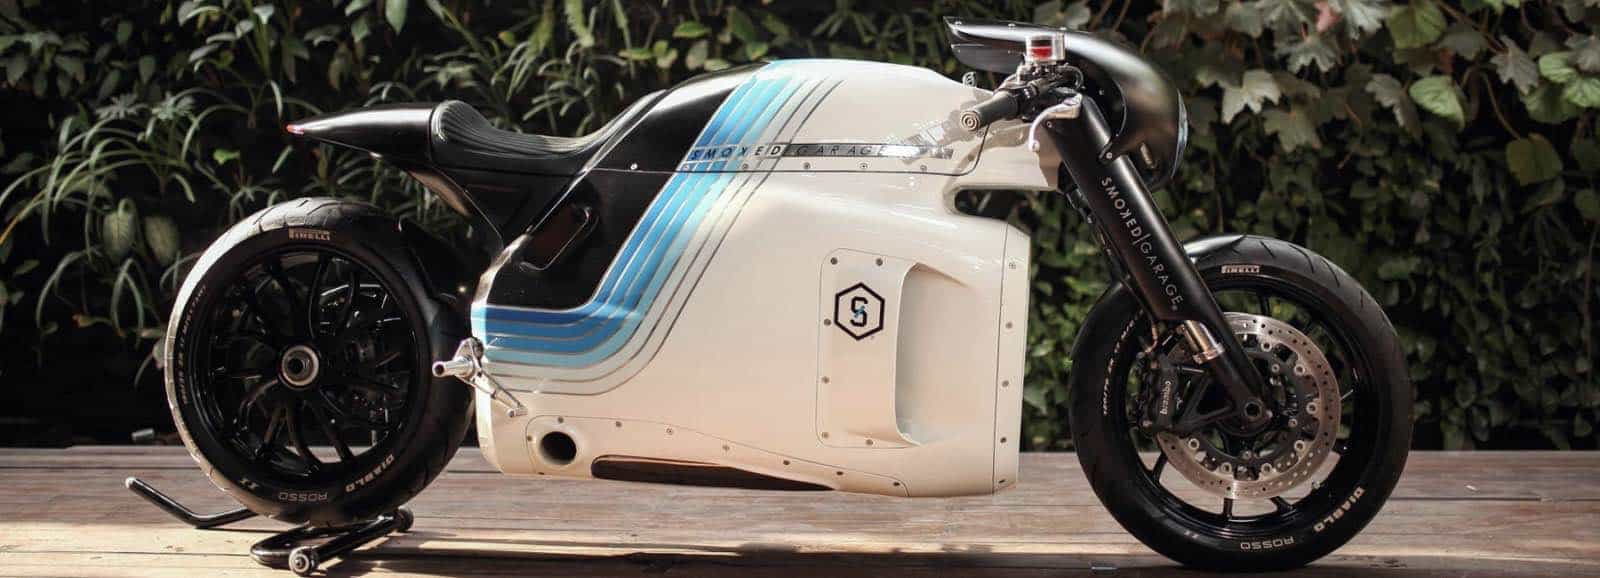 Triumph Ghost: Esta moto personalizada por Smoked Garage te sorprenderá